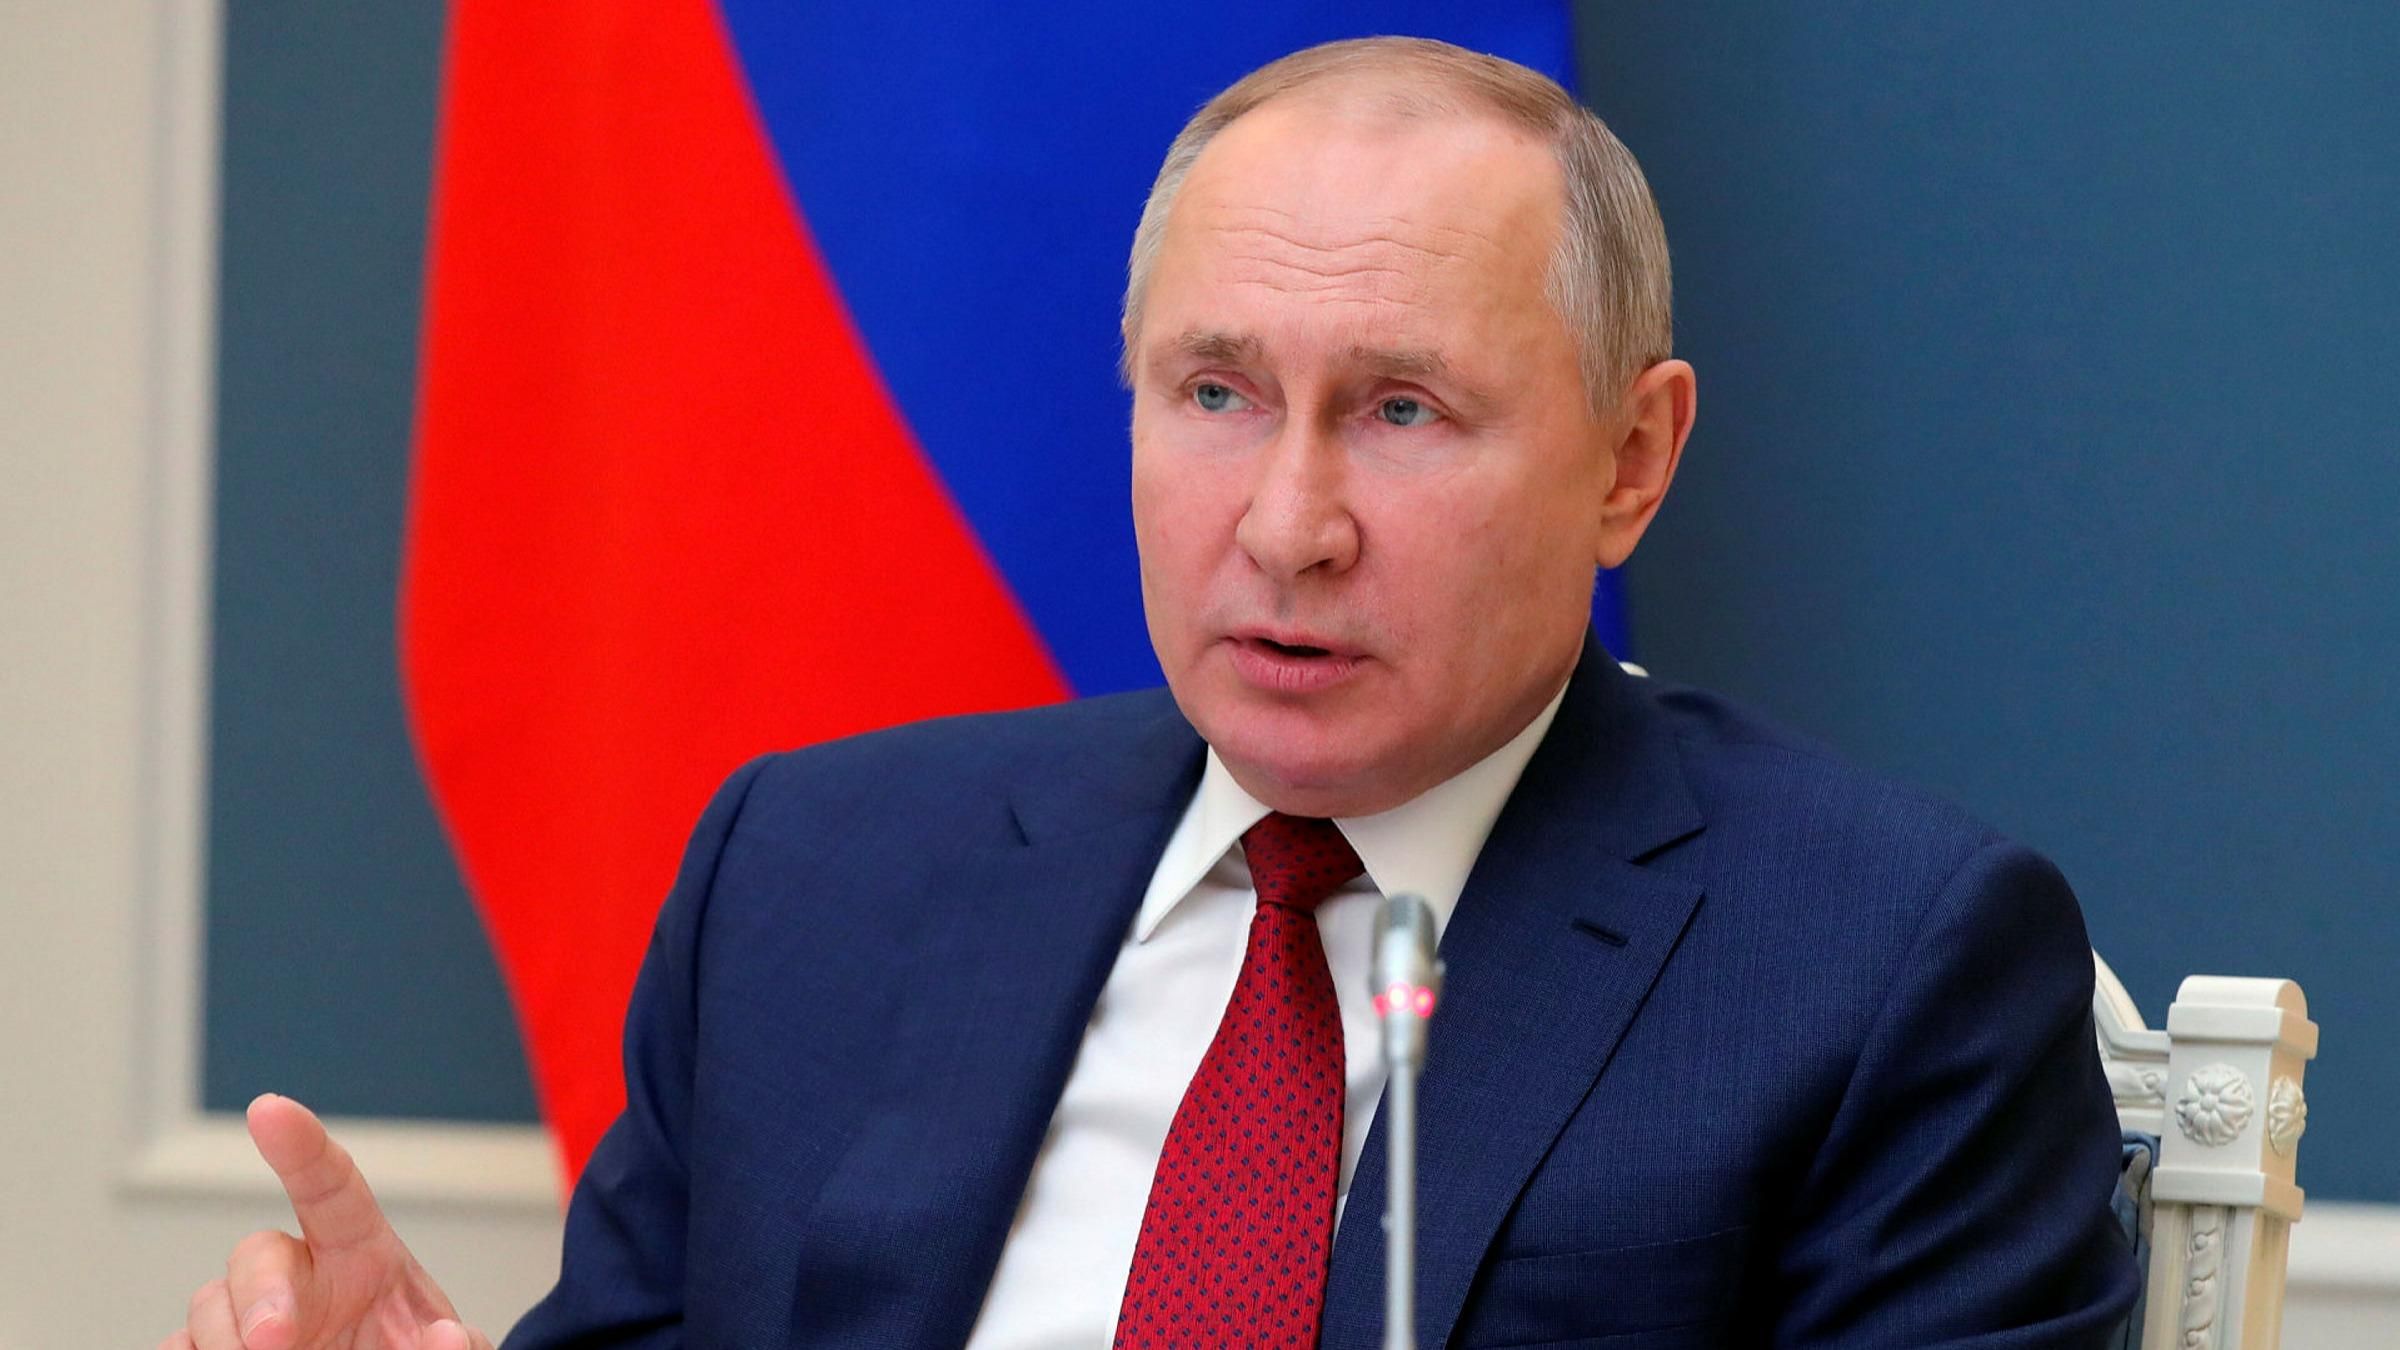 Не экологично: Путин придумал новый аргумент против транзита газа через Украину